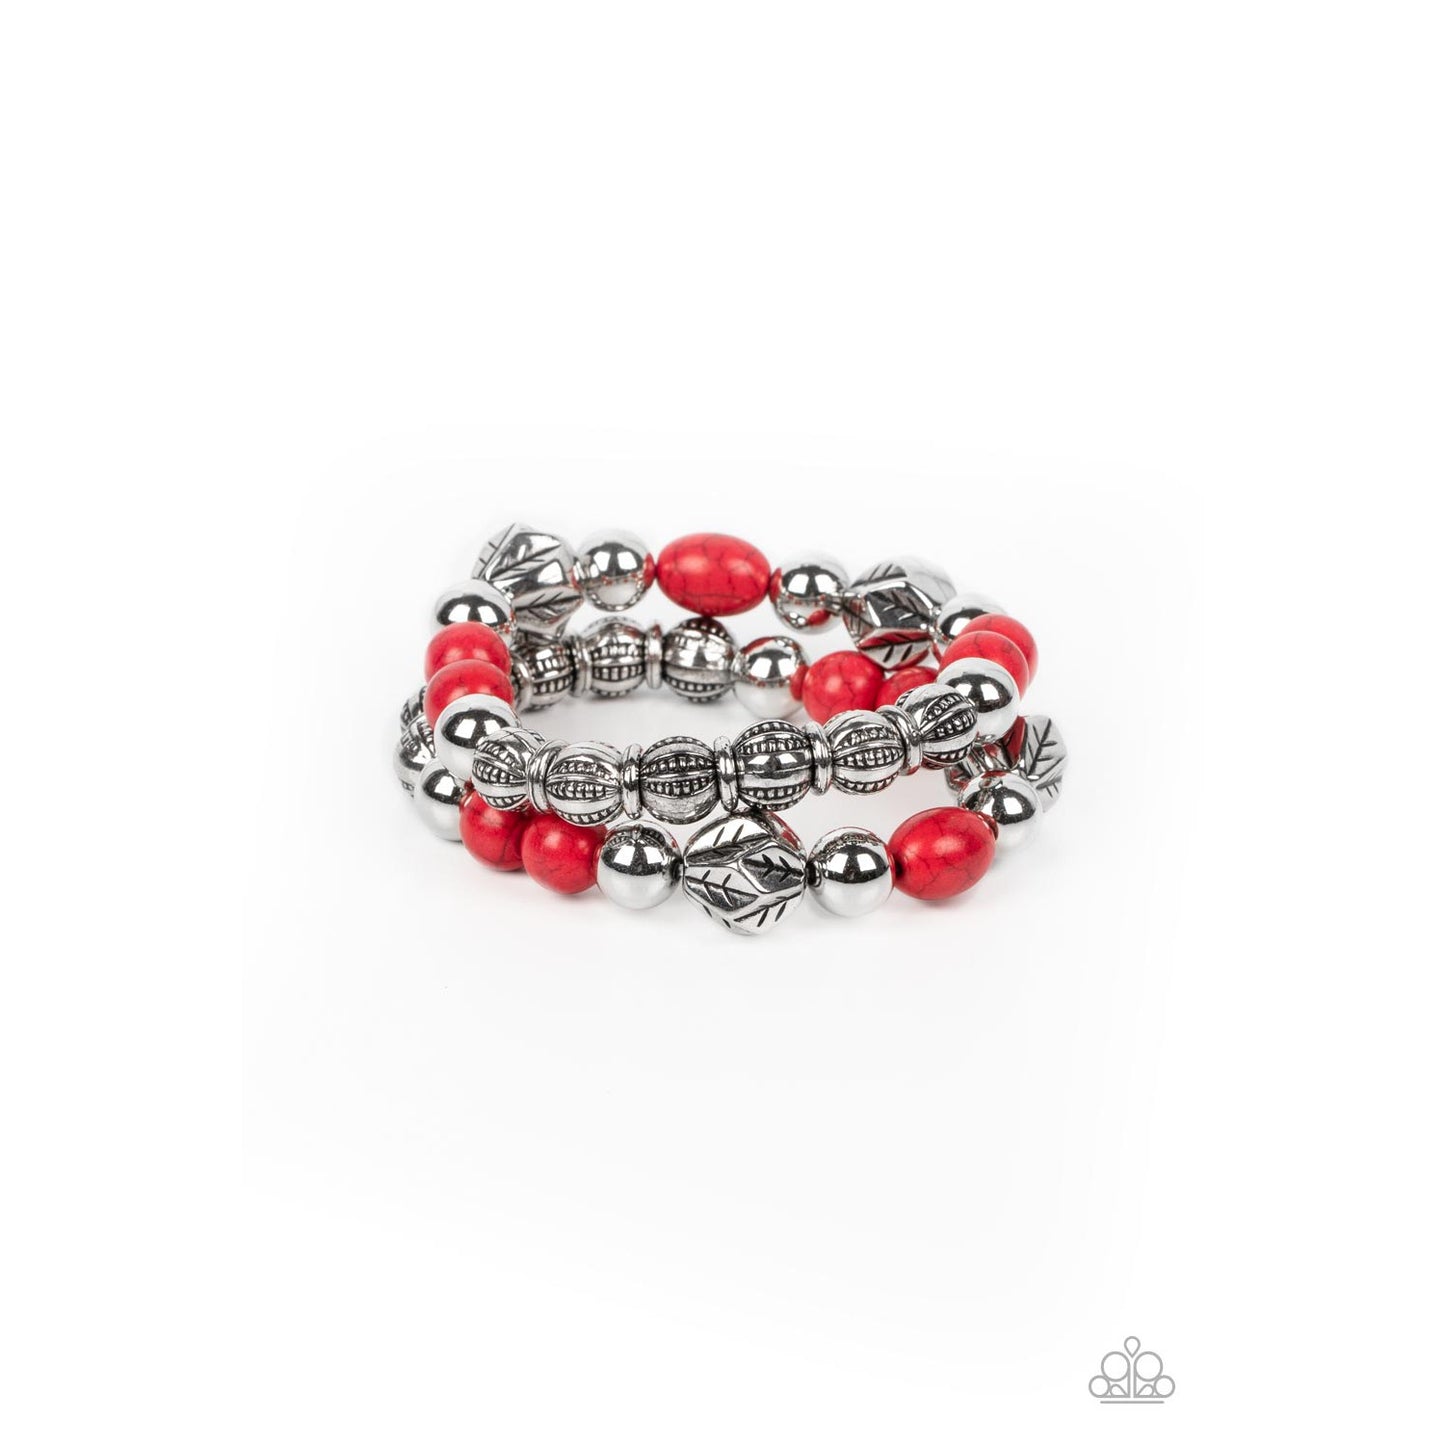 Sagebrush Saga - Red Stone Bracelet - Bling by Danielle Baker